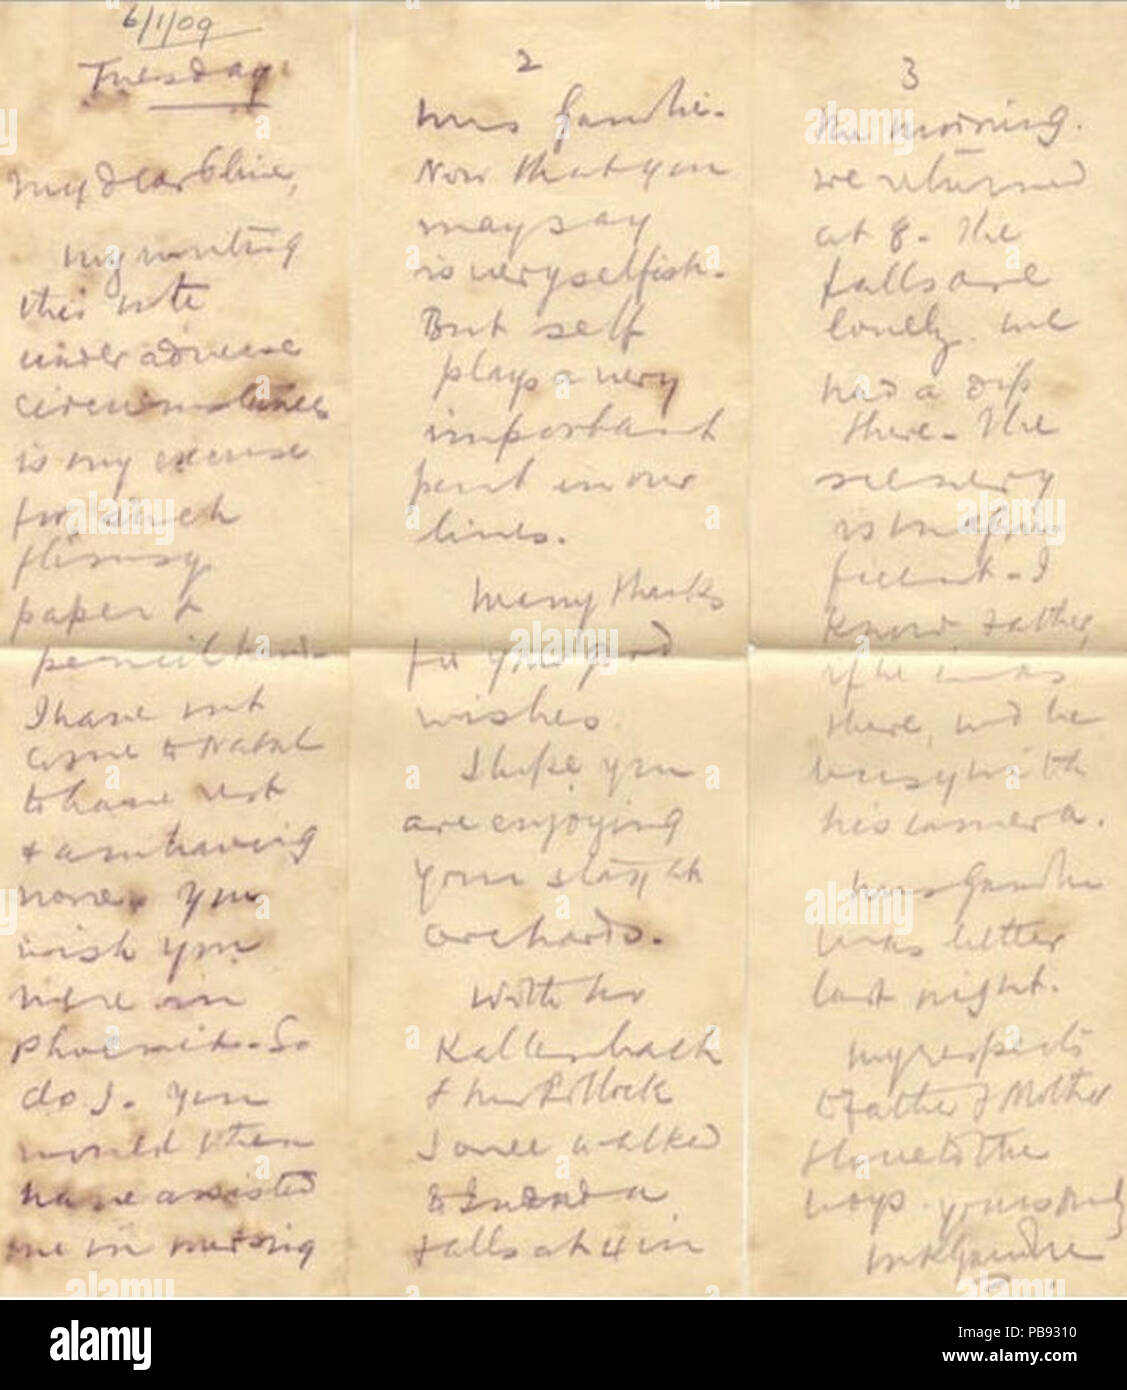 1052 MKGandhi Carta en lápiz indeleble el 6 de enero de 1909 Sudáfrica Foto de stock